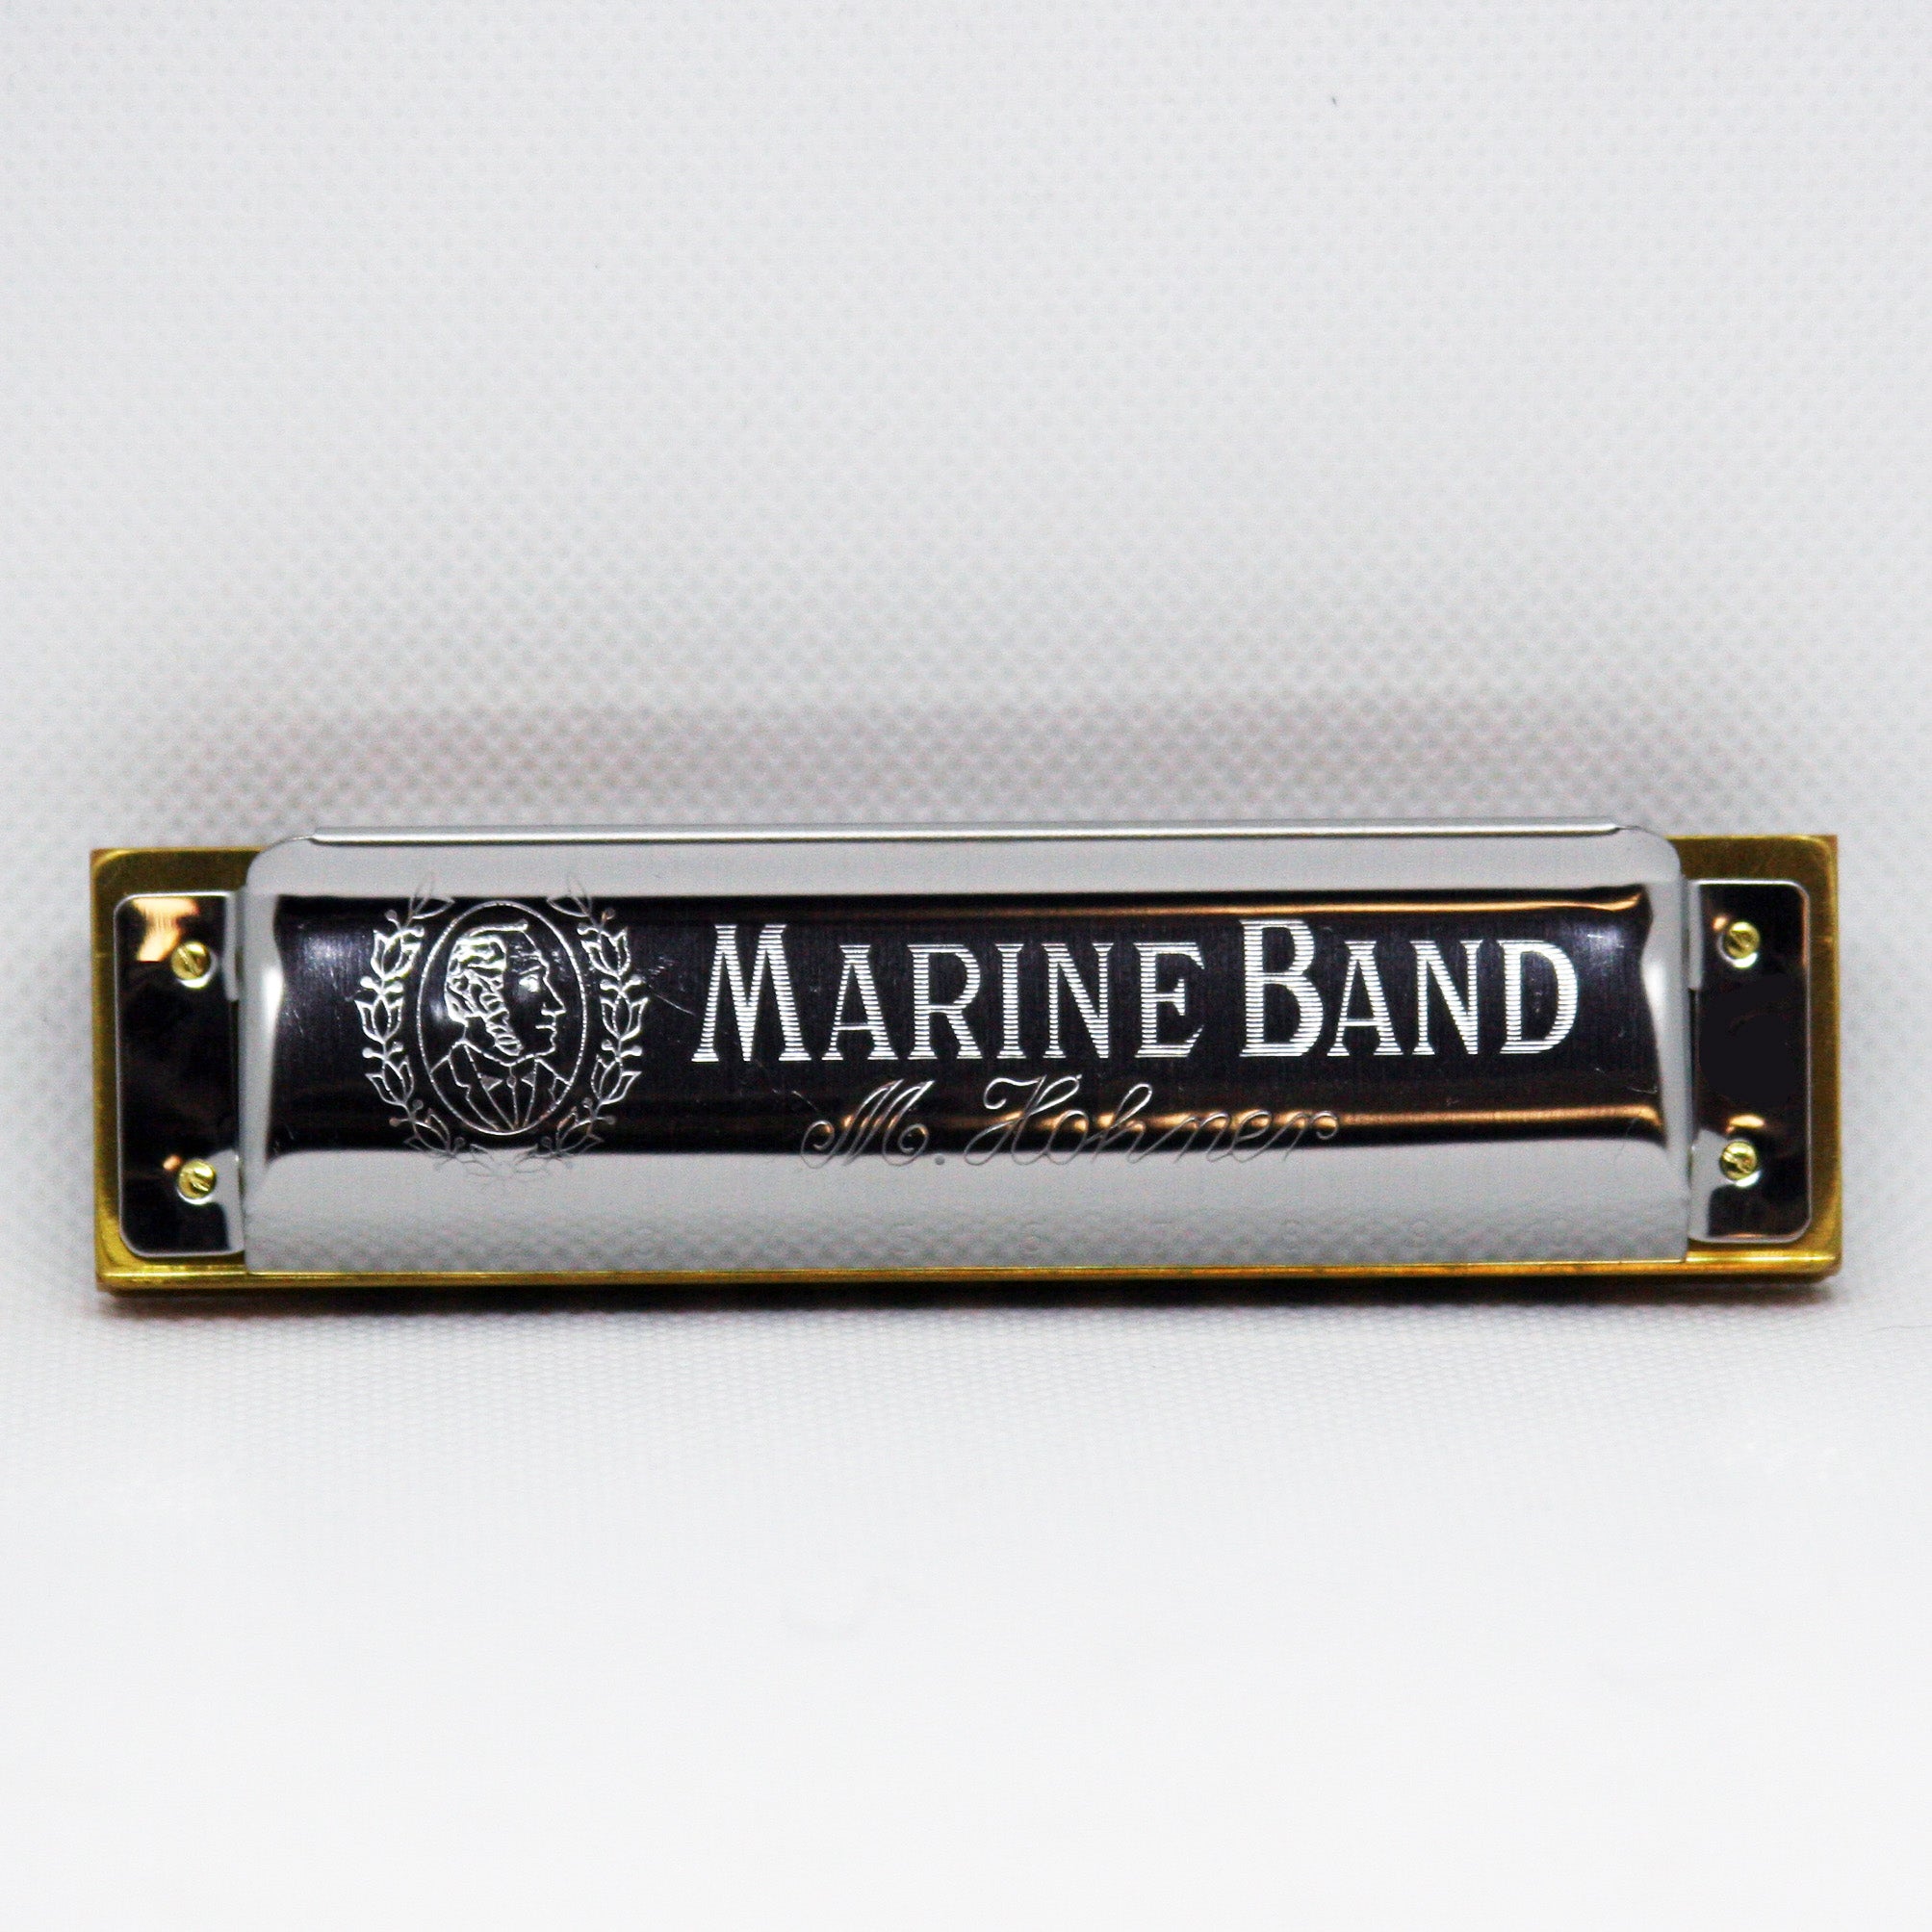 Hohner Marine Band Harmonica, B